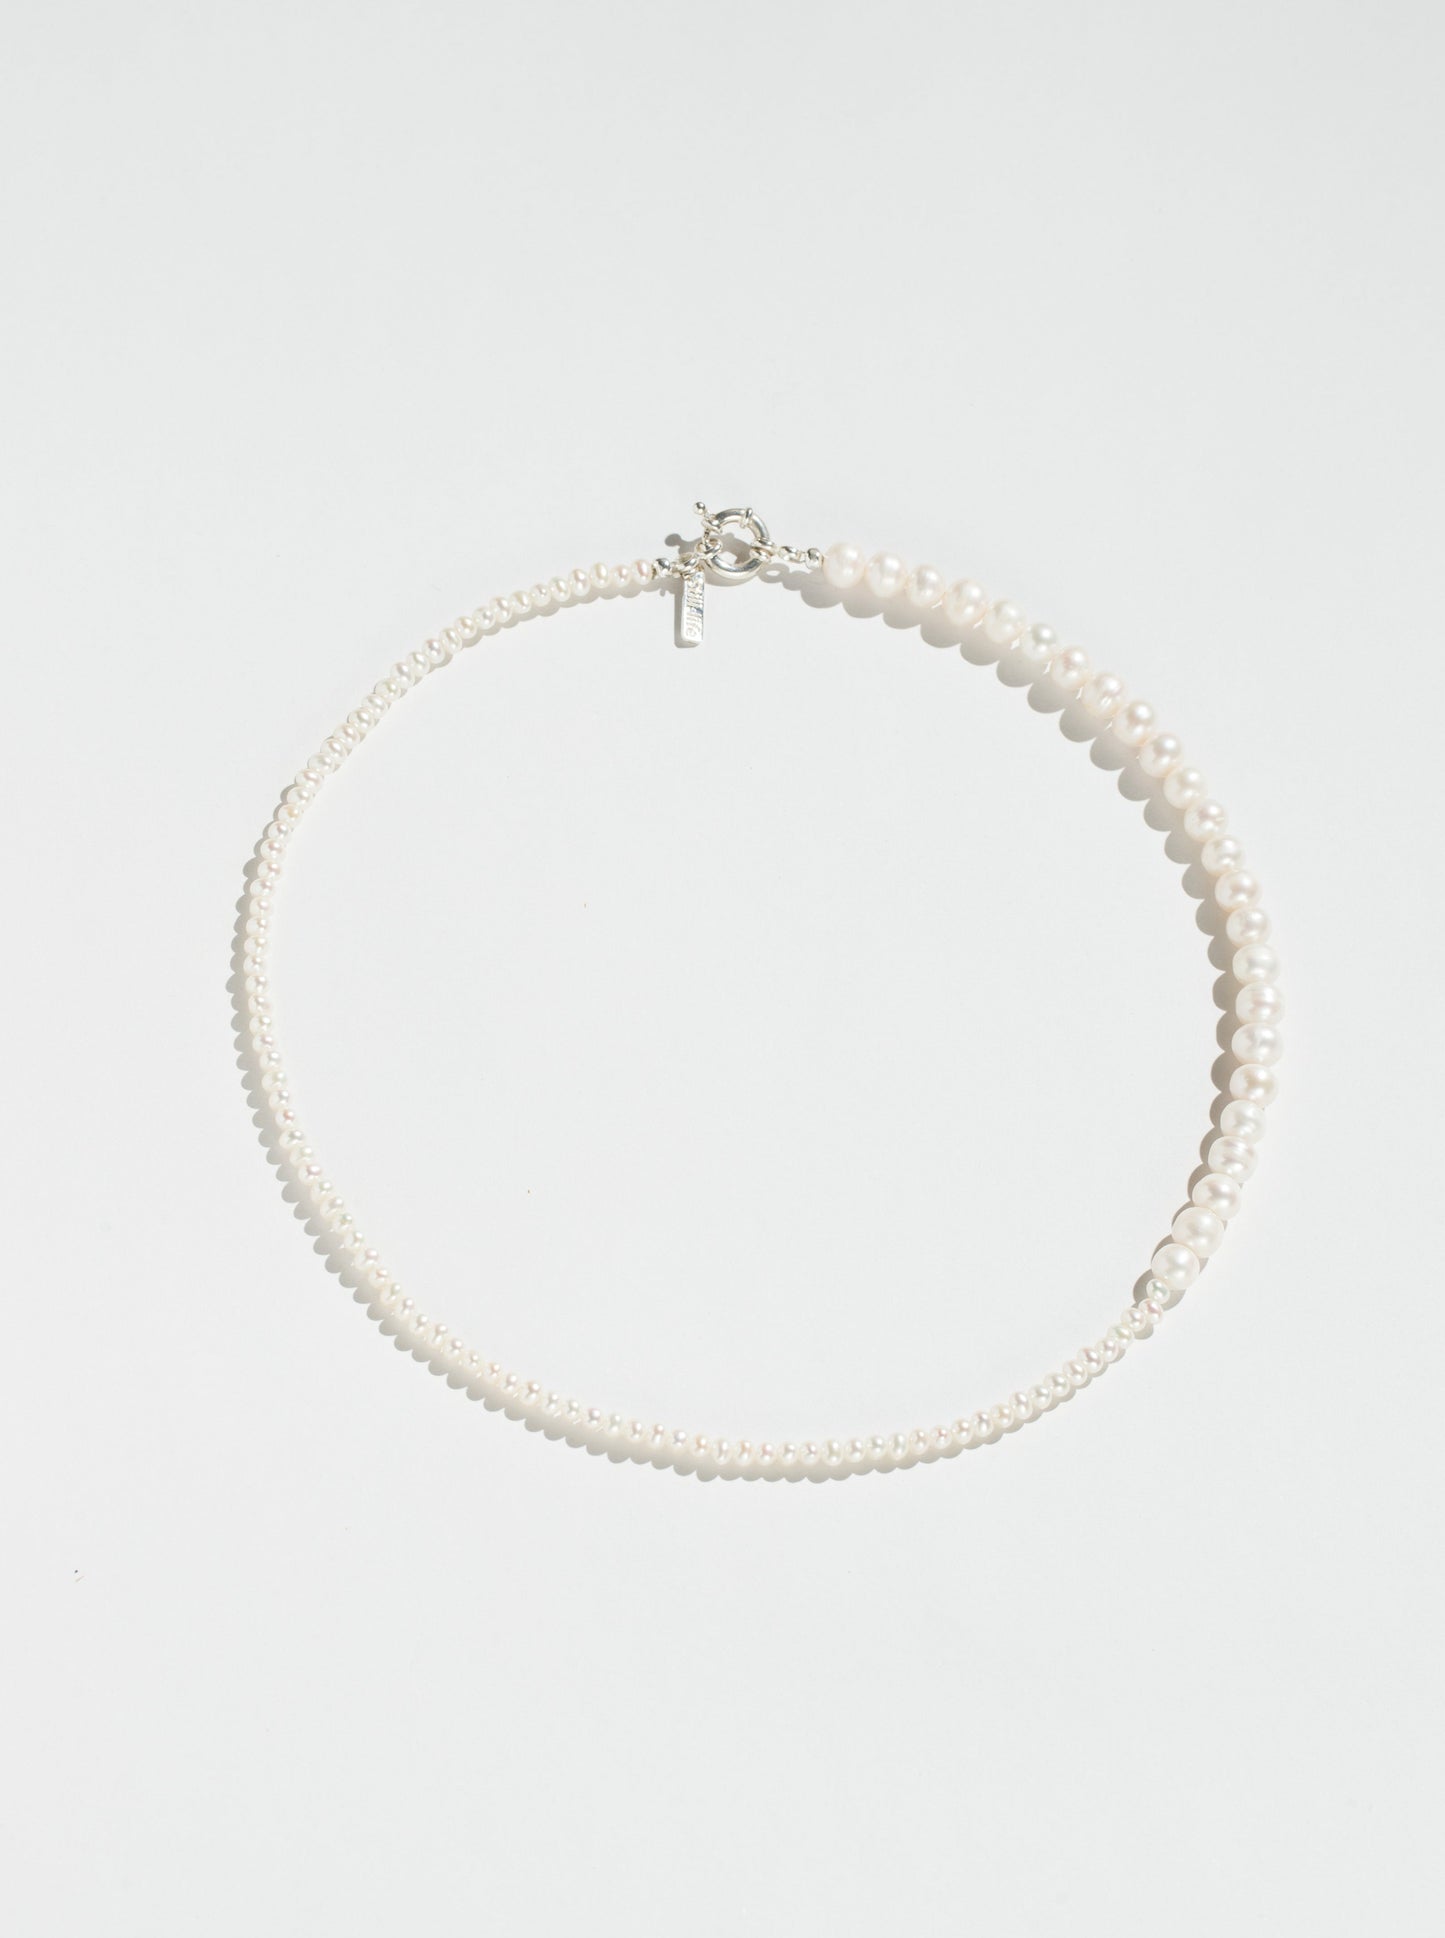 Demi Lune Pearl Necklace